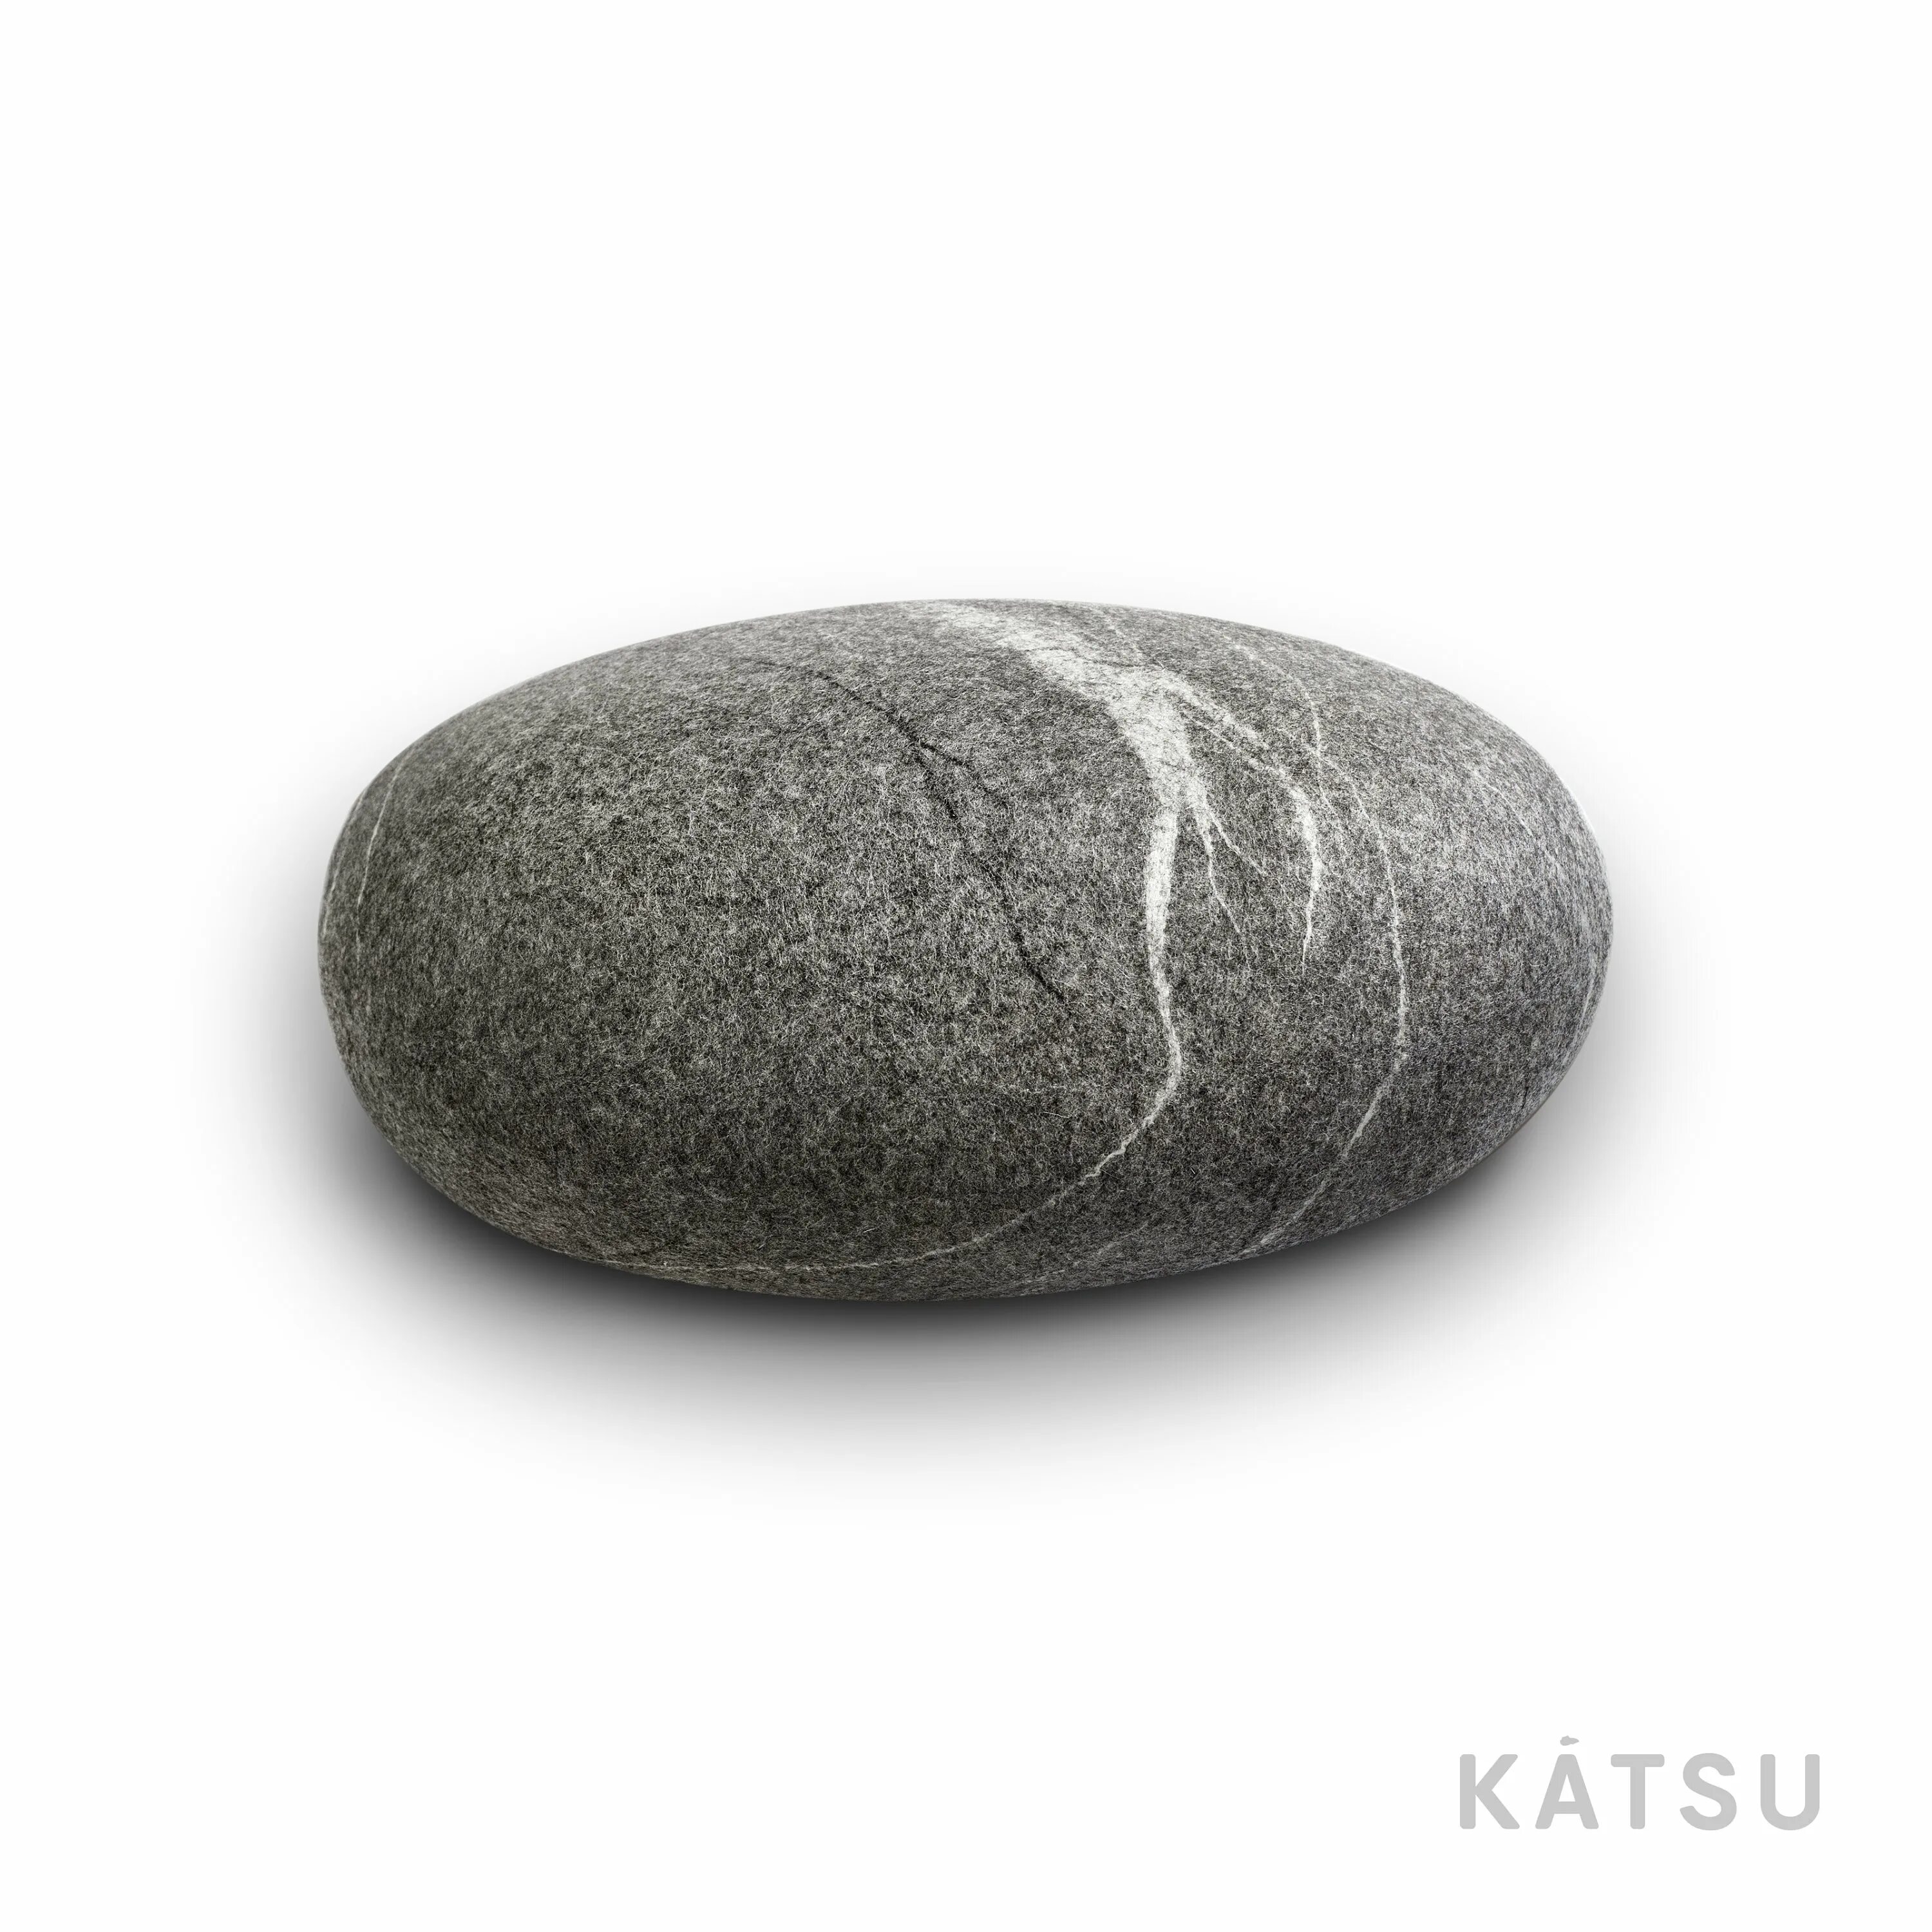 Felt stone. Katsu камни пуфы. Katsu камни валяные. Пуф галька. Подушка камни.